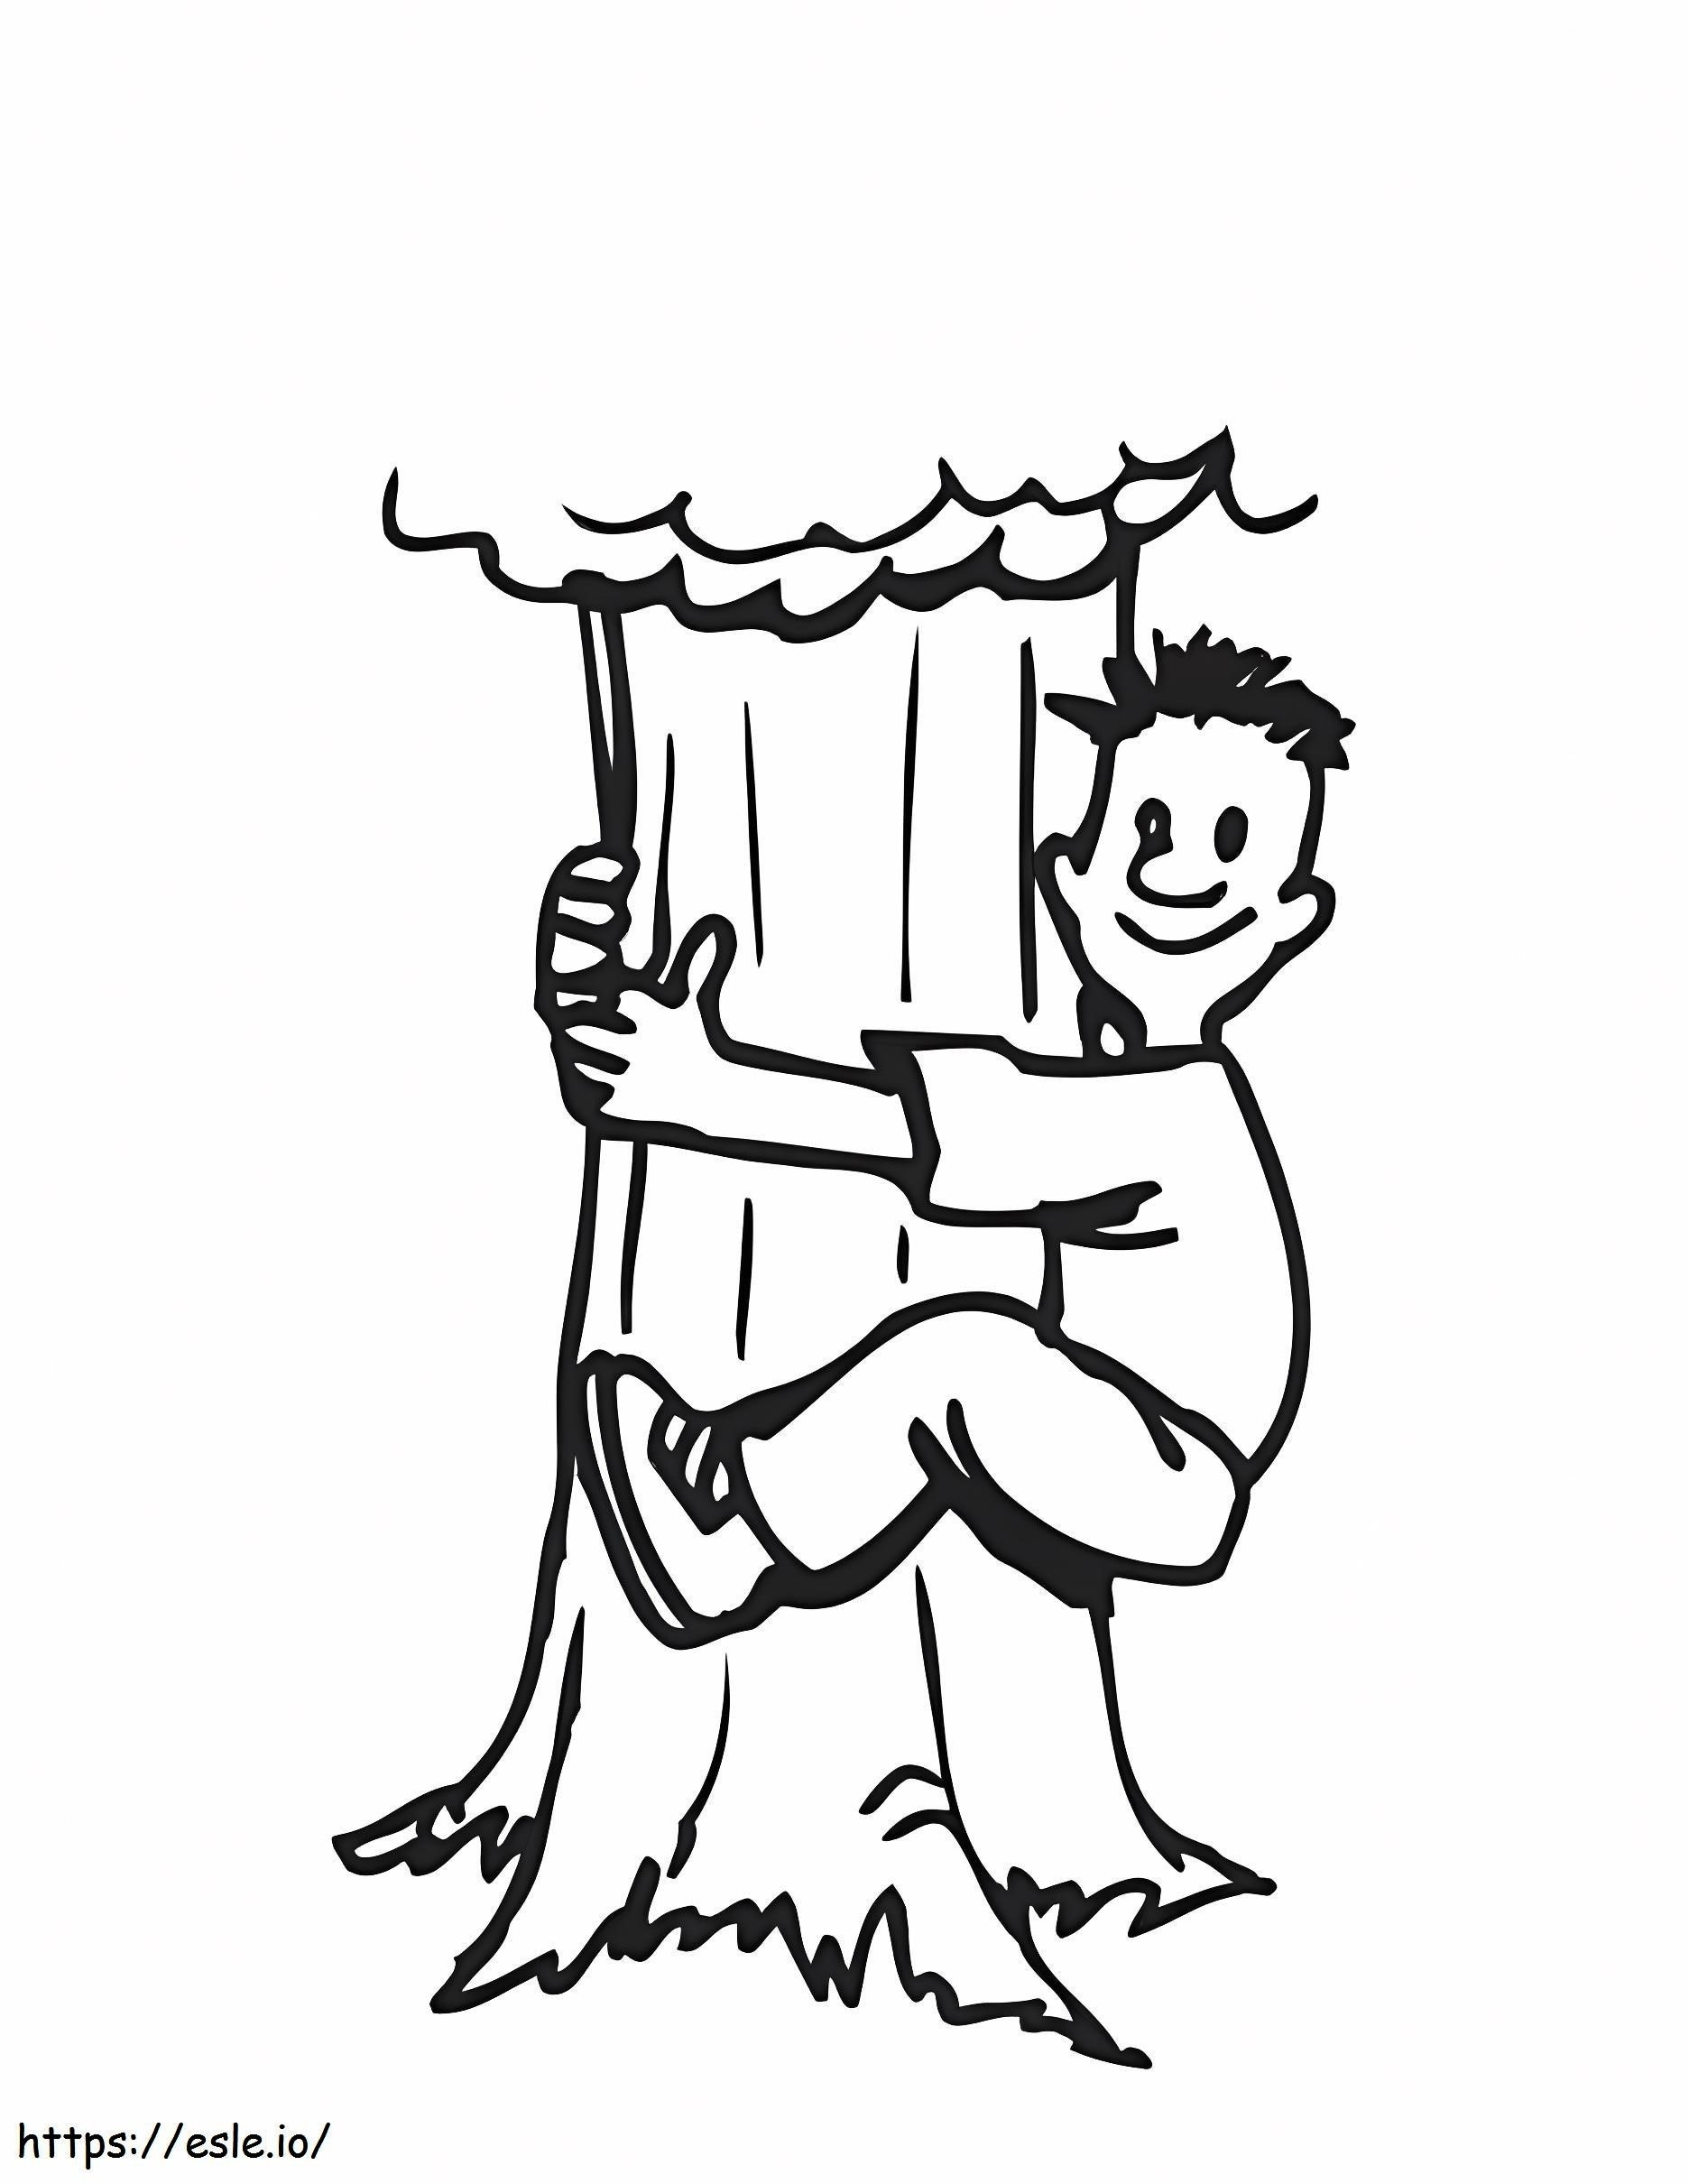 Człowiek wspinający się na drzewo kolorowanka